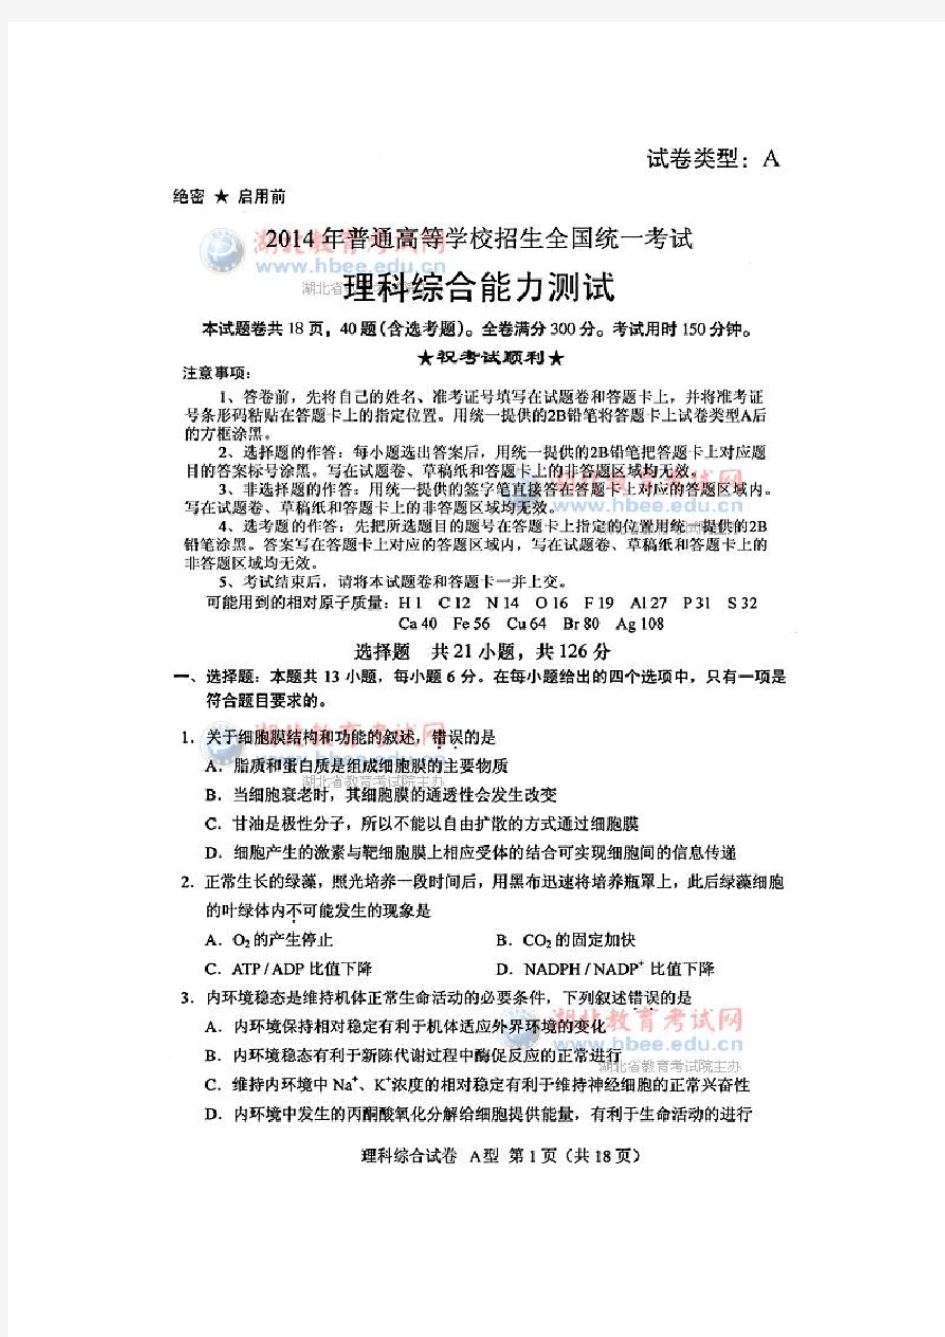 2014年湖北省高考理科综合试卷及参考答案(官方版)